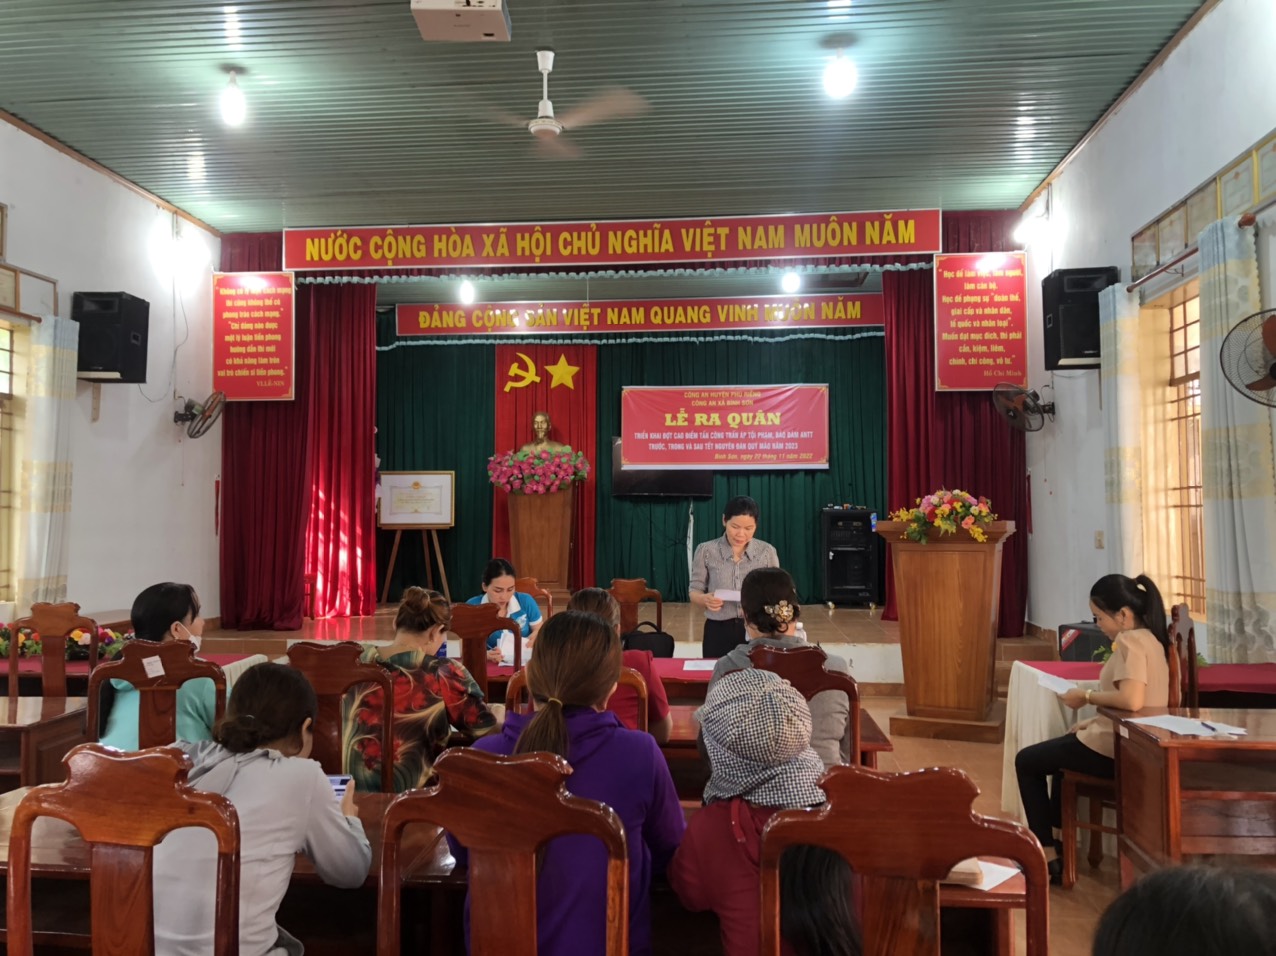 Hội LHPN huyện Phú Riềng giải ngân 320 triệu đồng cho hội viên phụ nữ nghèo, khó khăn xã Bình Sơn, xã Long Hưng